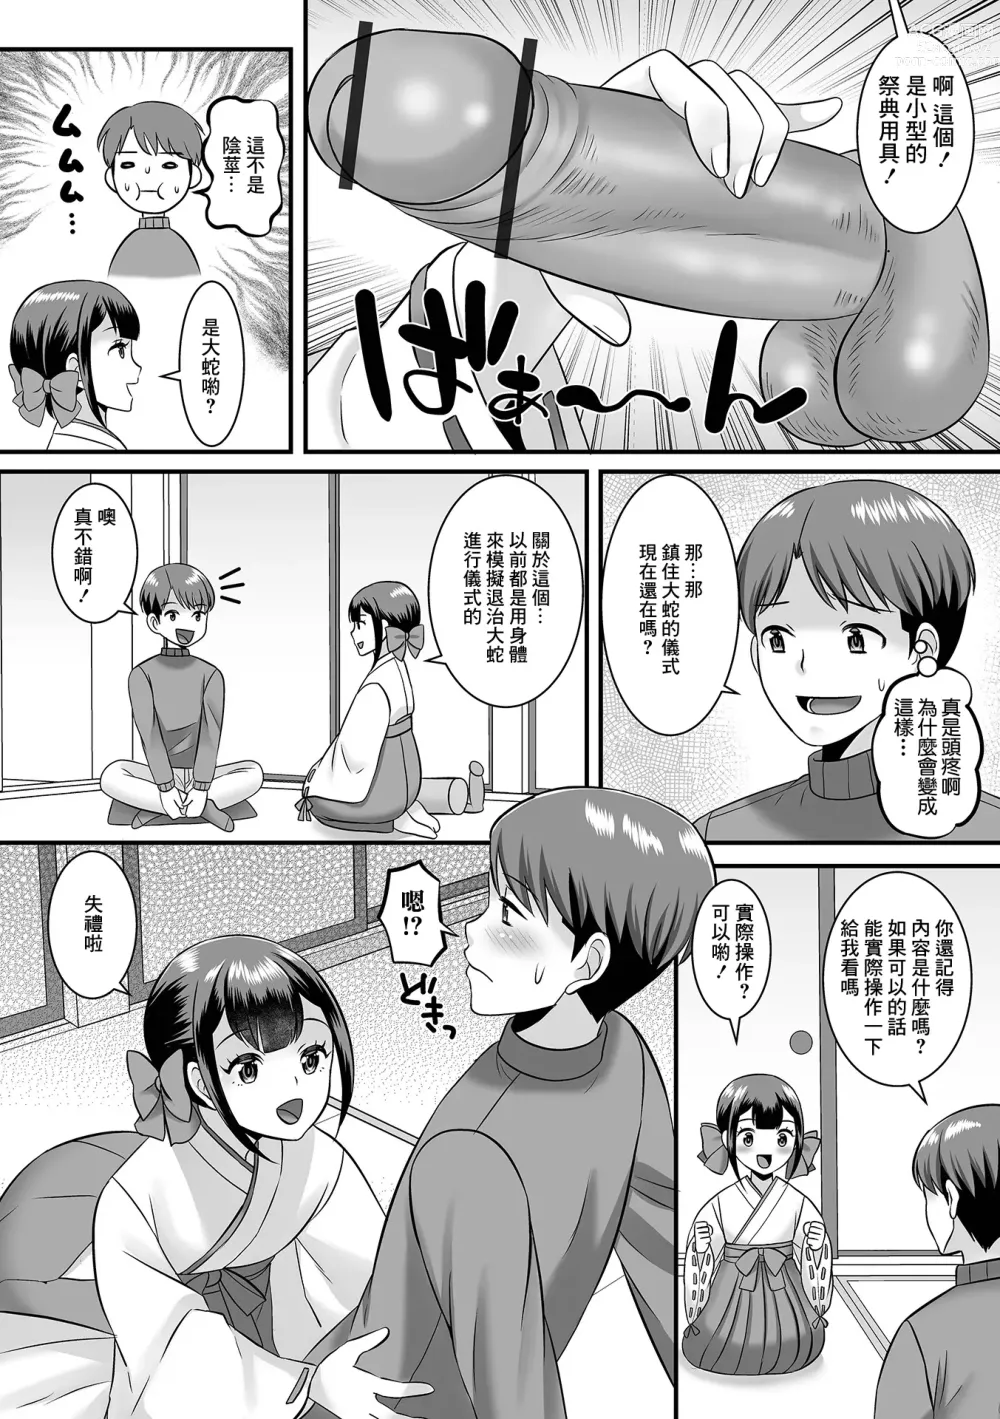 Page 6 of manga Muraokoshi Daisakusen Otokonoko Mura